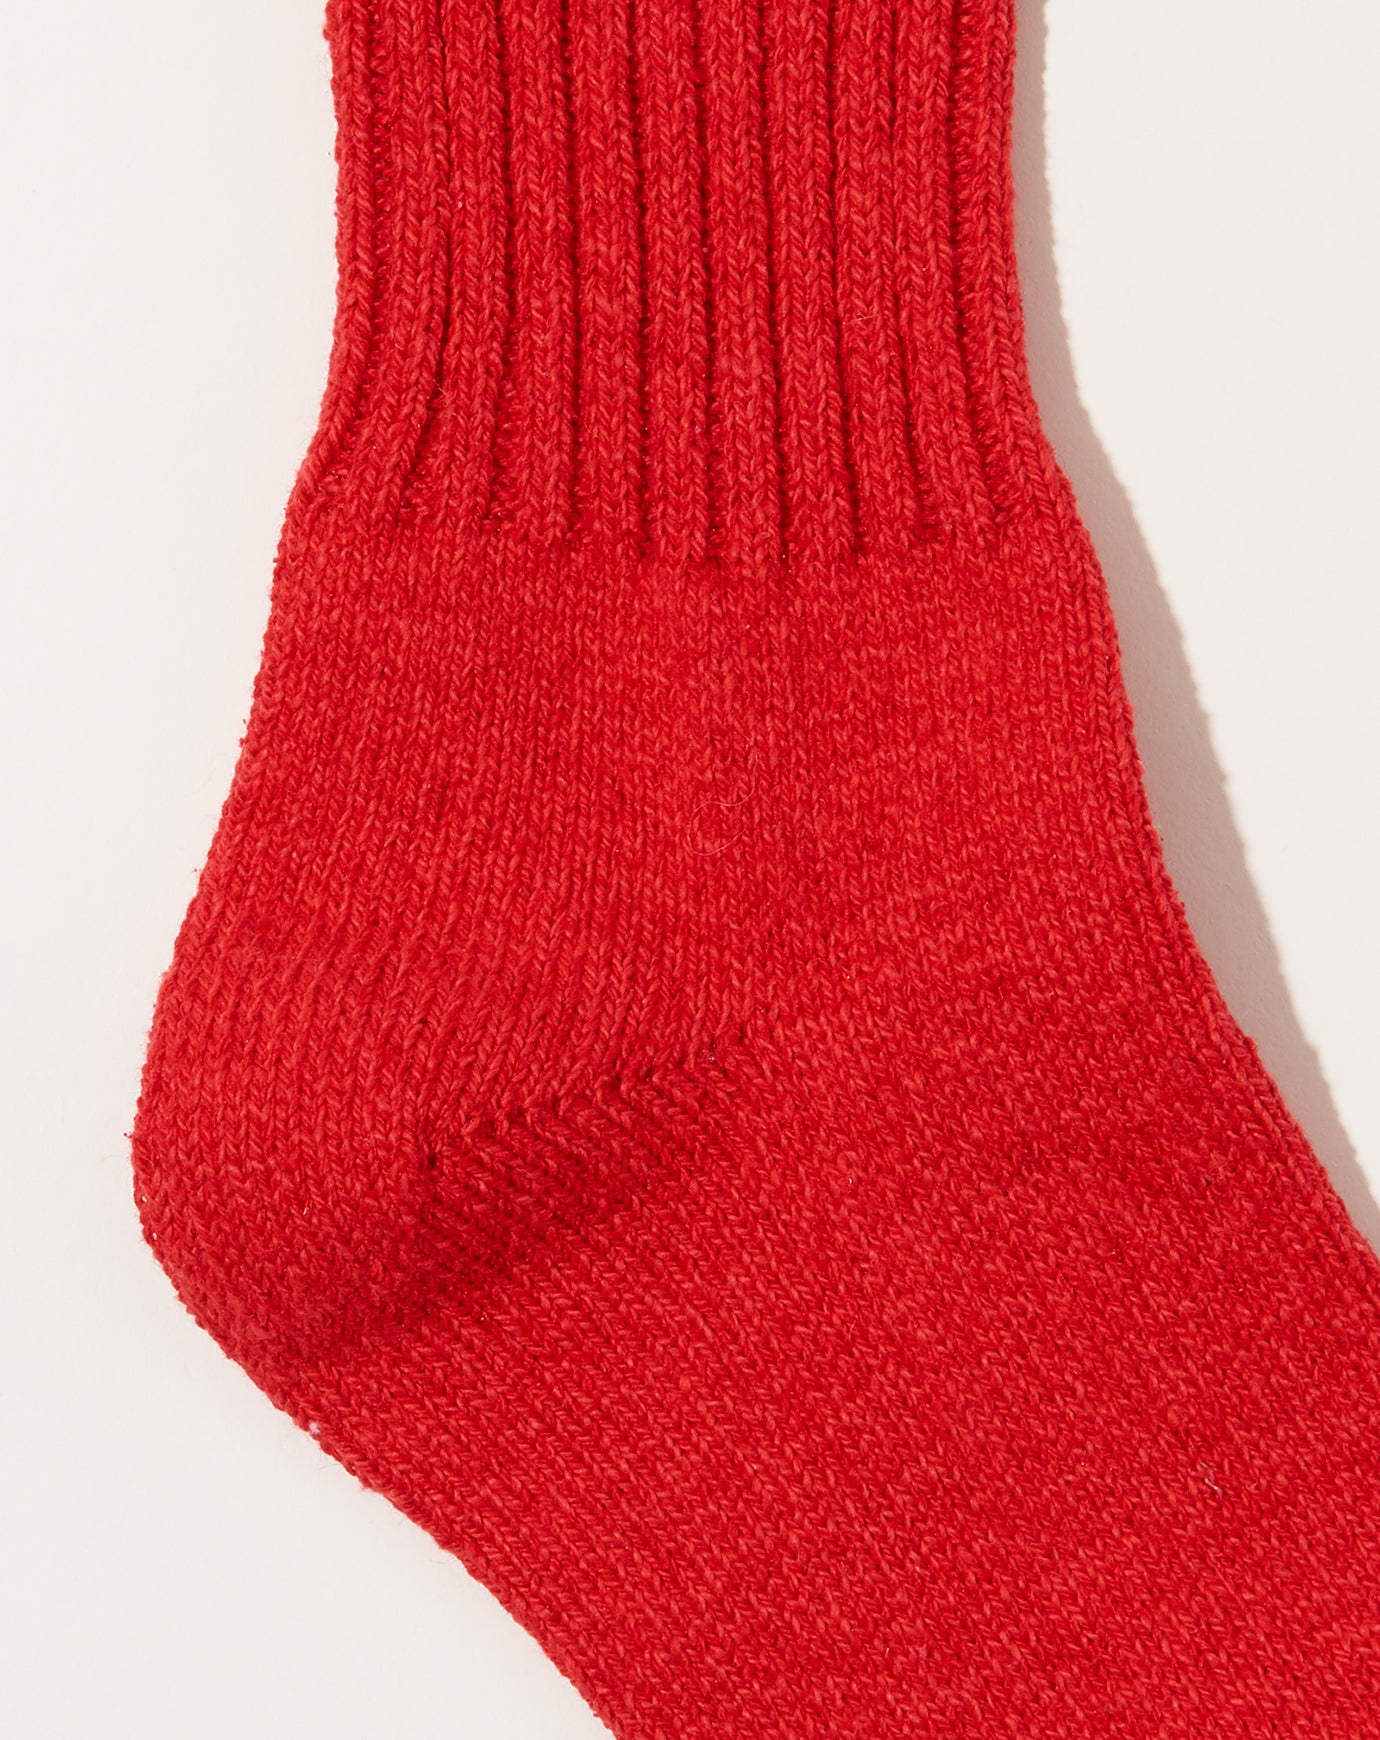 Nishiguchi Kutsushita Silk Cotton Socks in Red